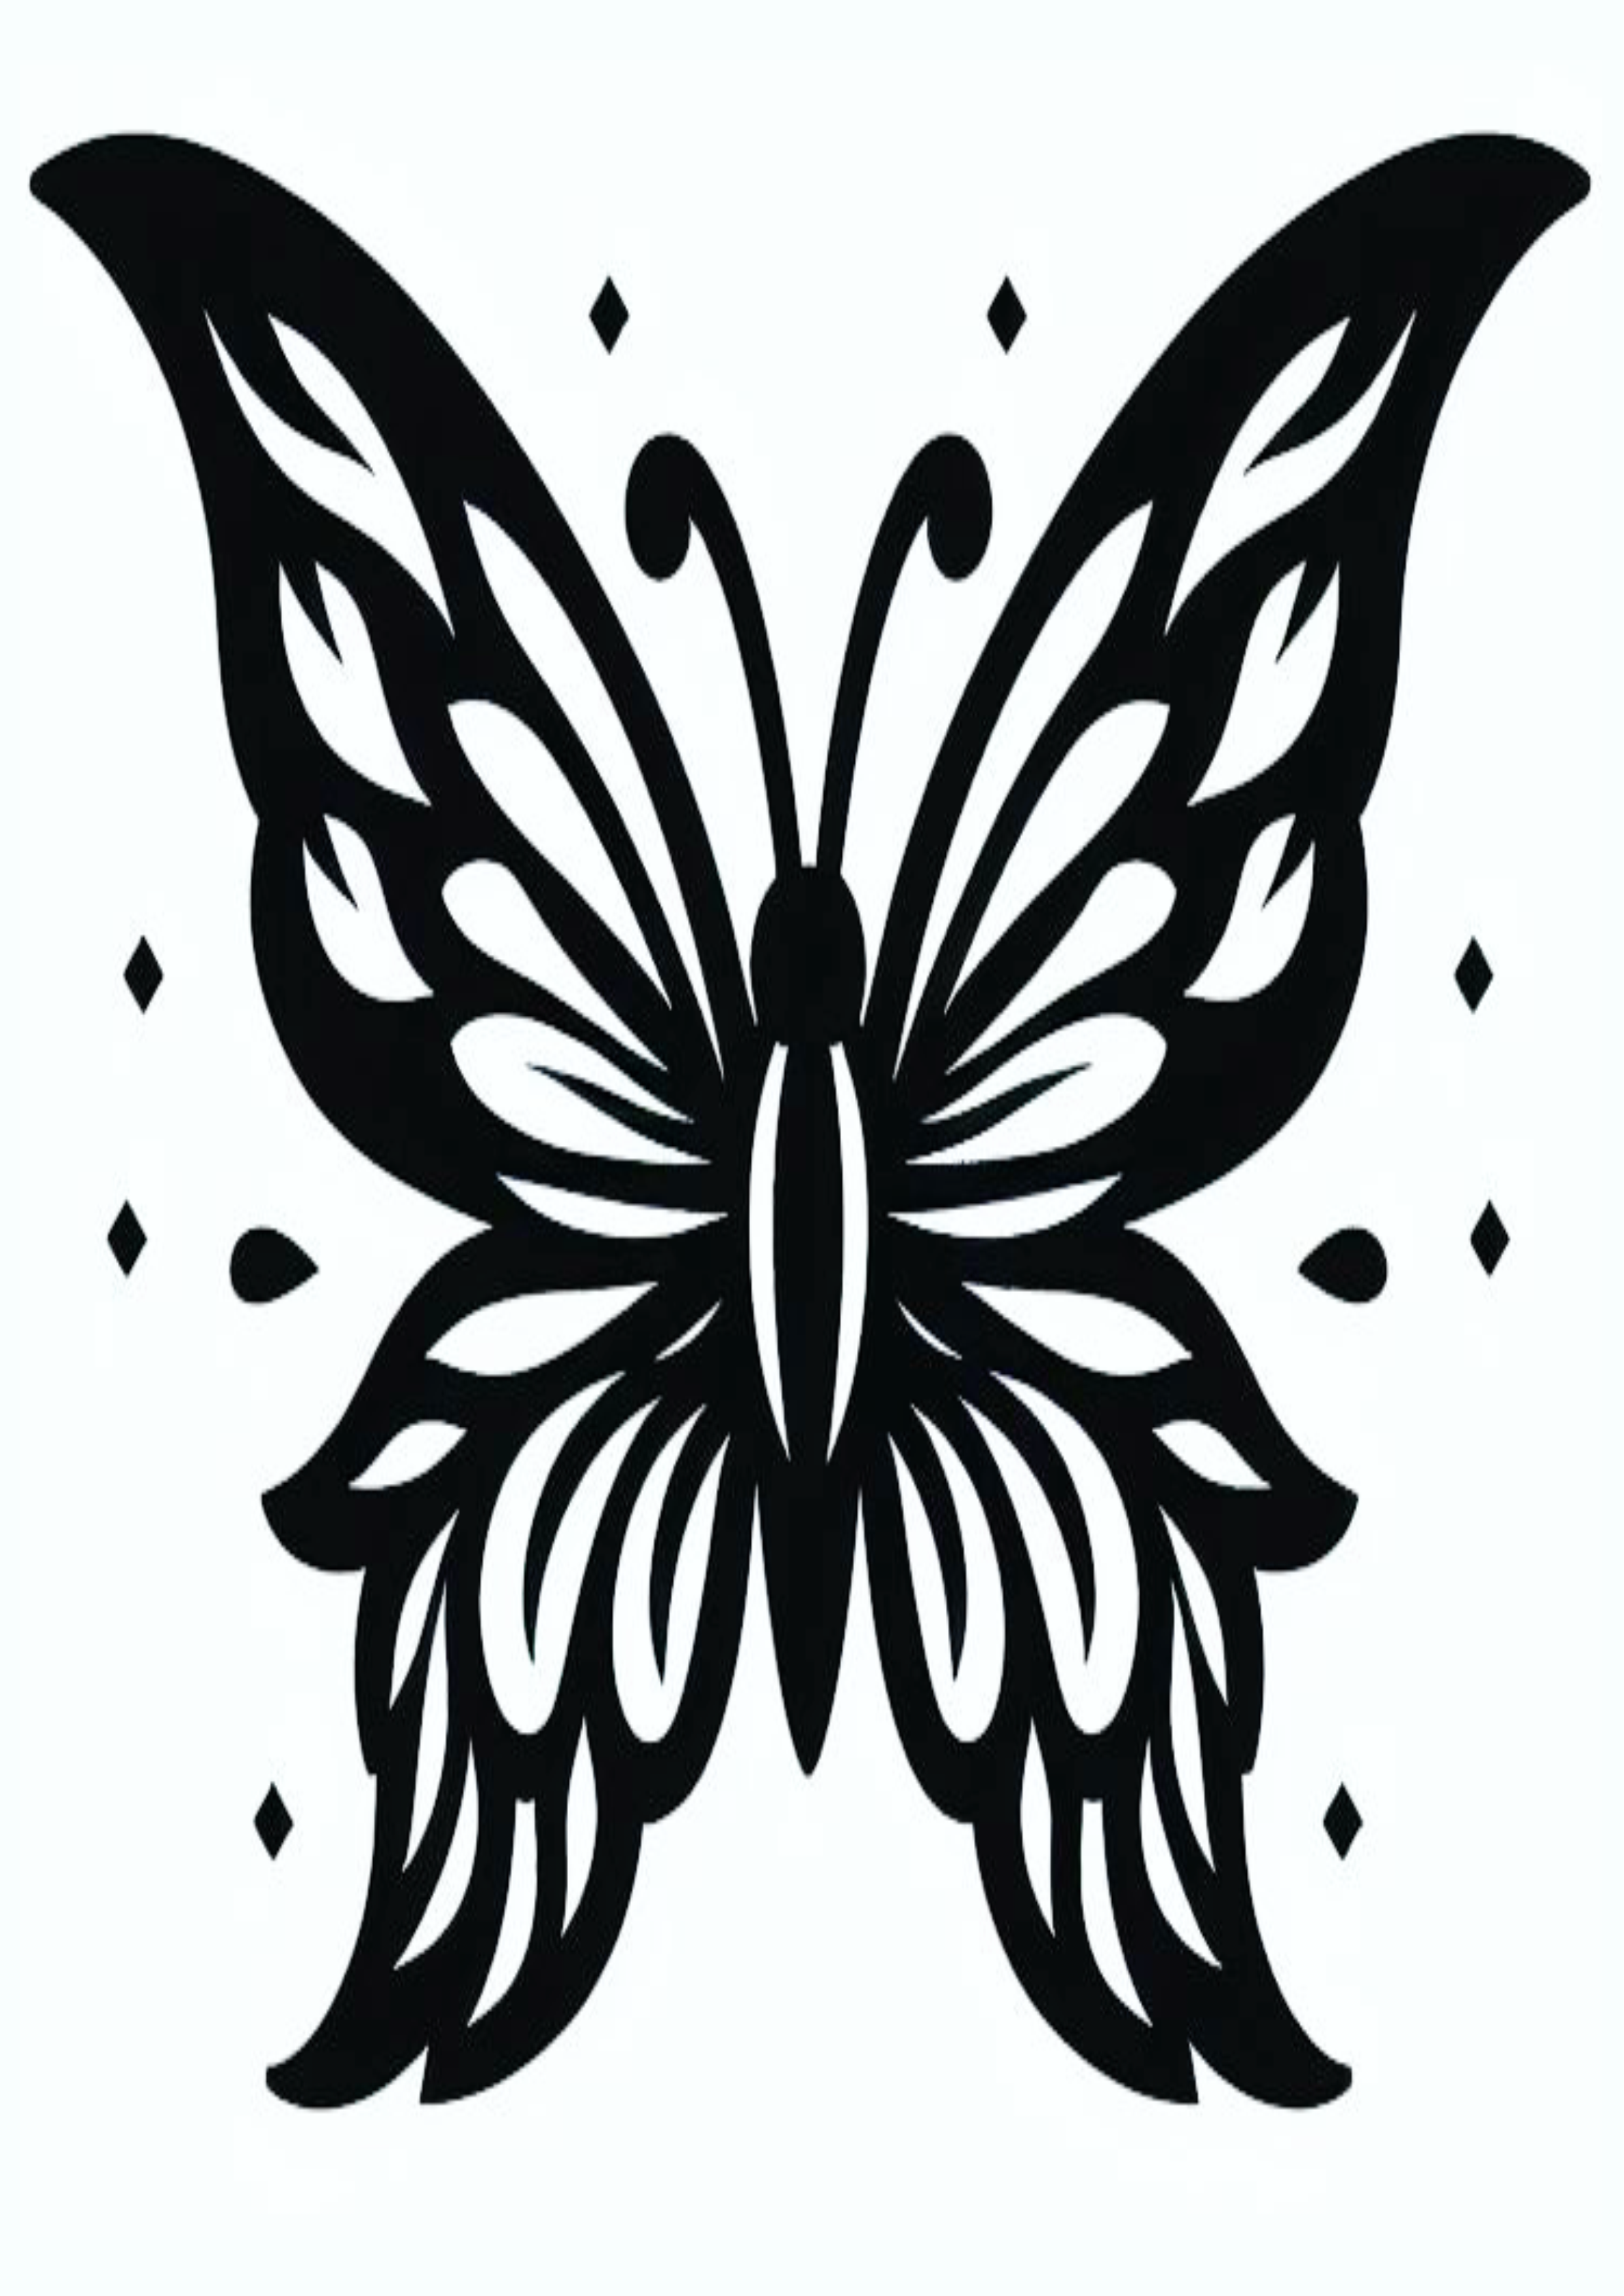 Borboleta tatuagem feminina minimalista traços png image desenho grátis para imprimir